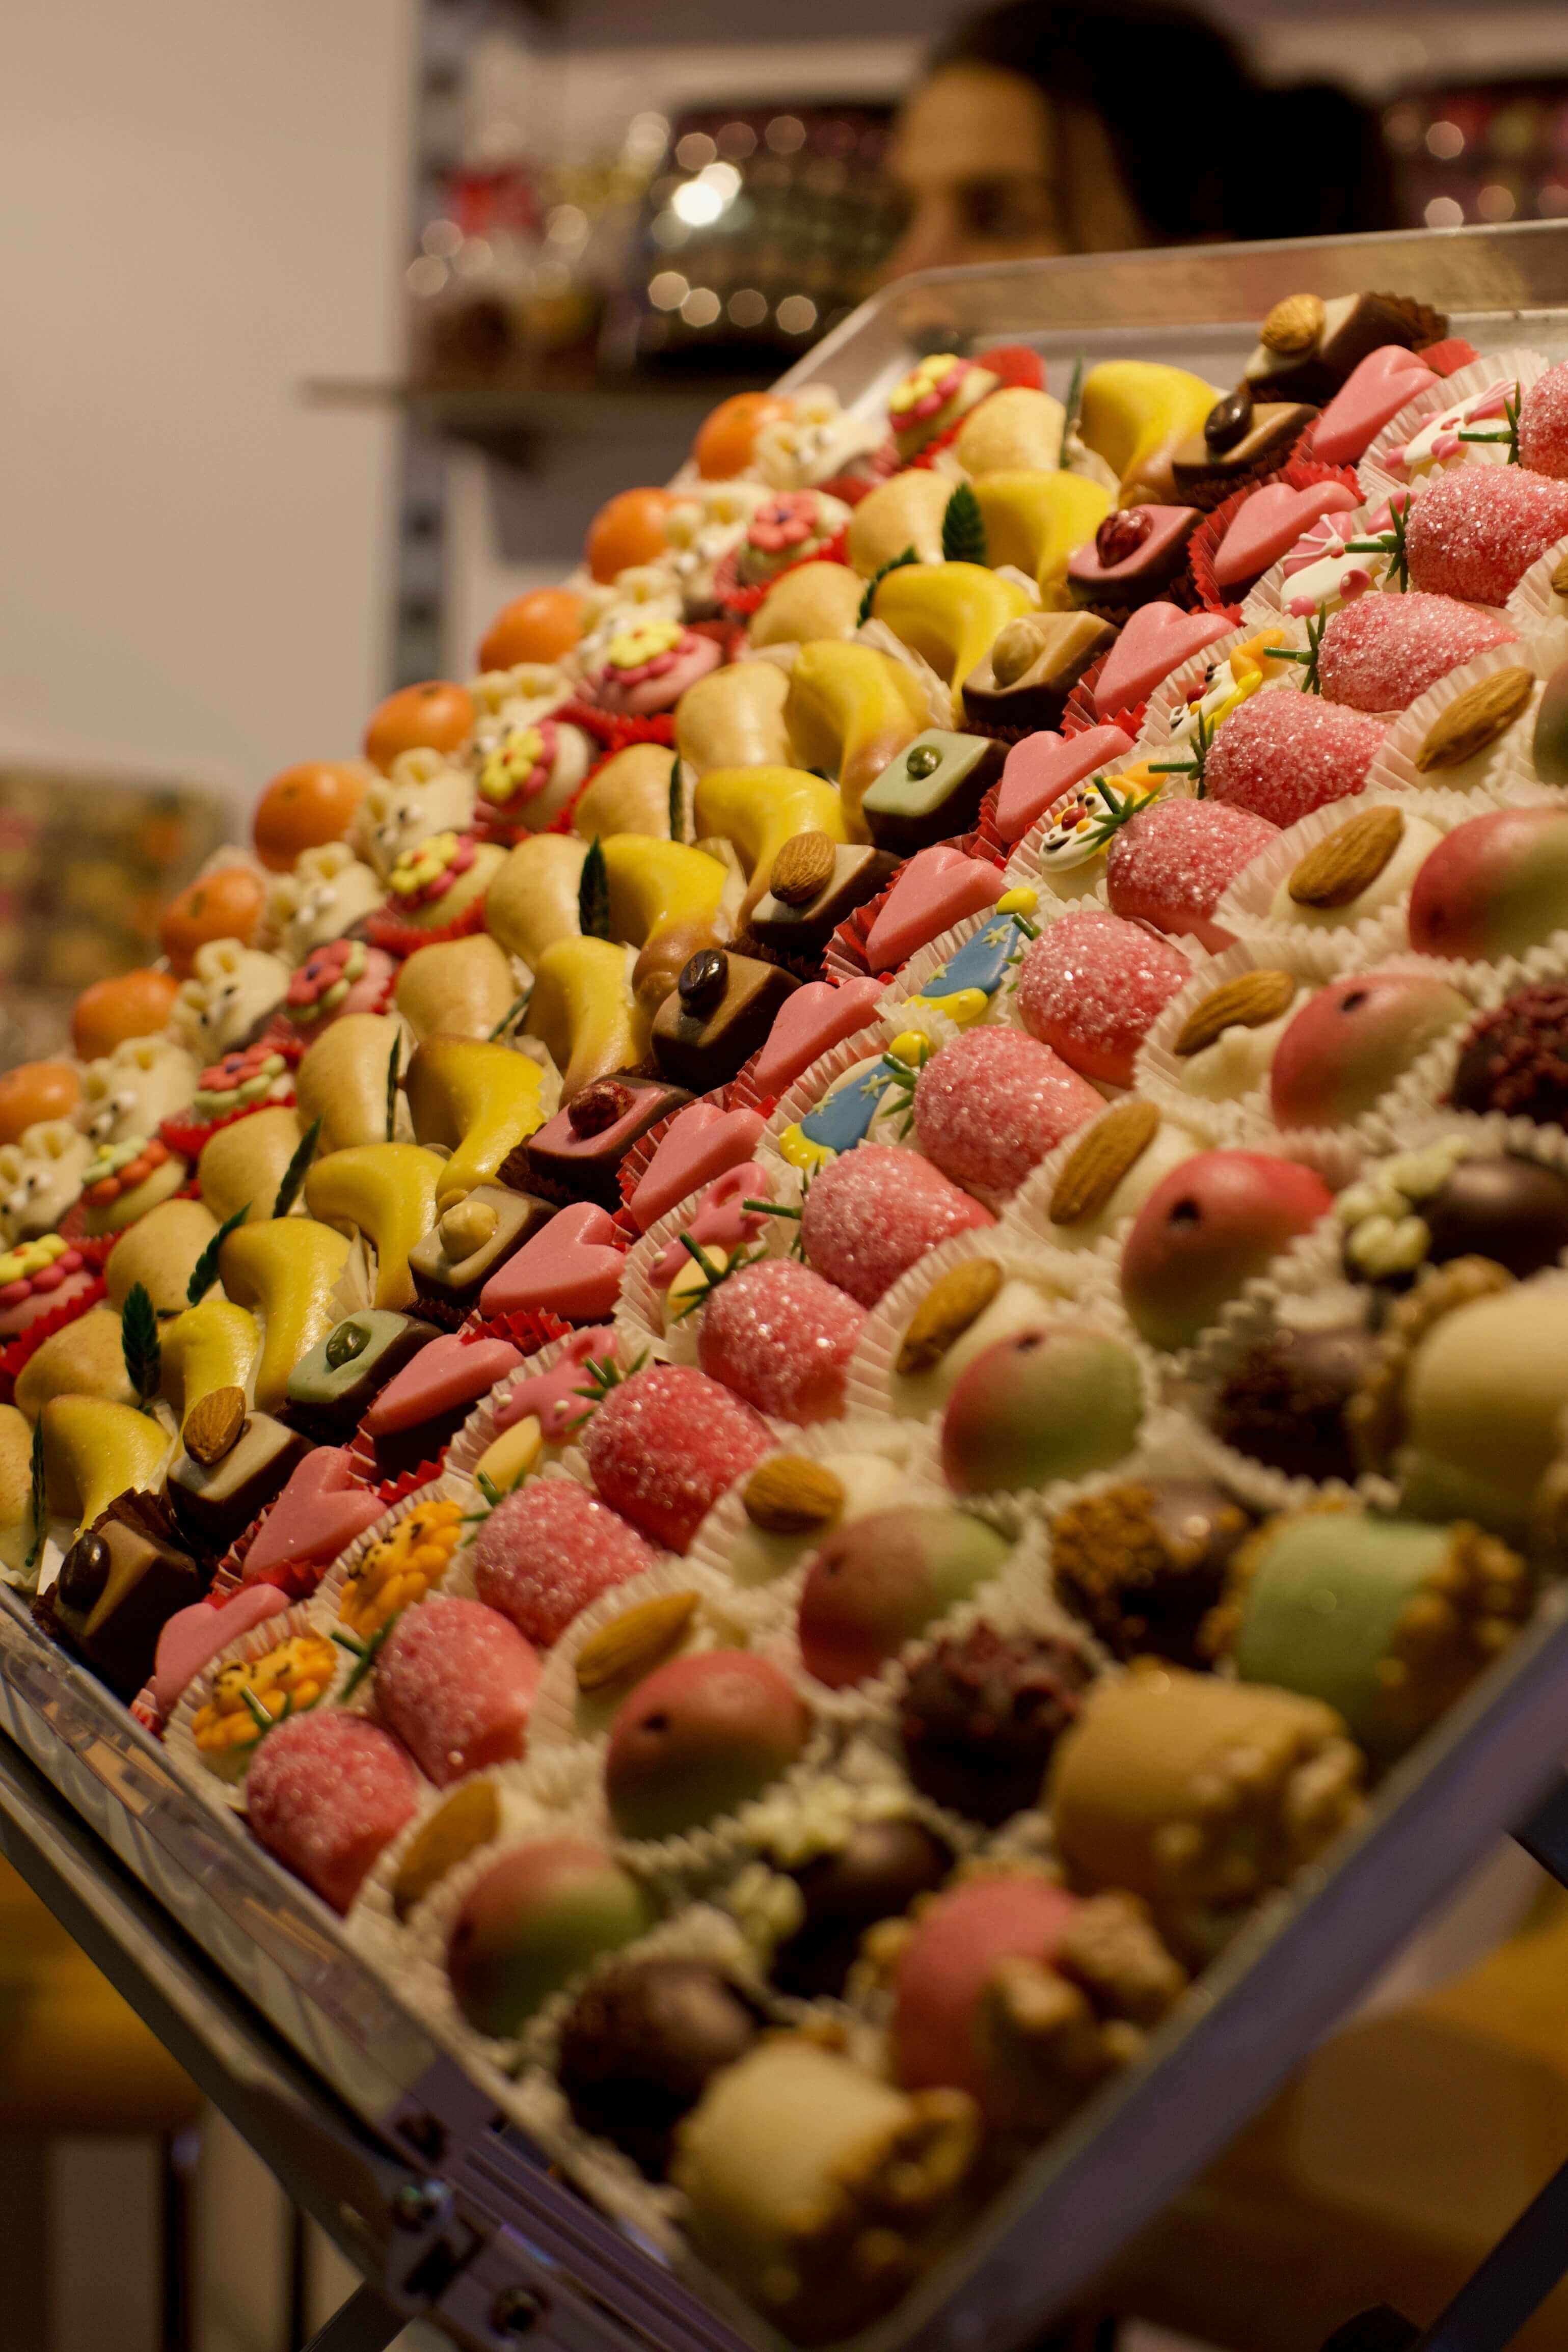 Ein Tag auf der Süßwarenmesse ISM 2018 in Köln: süße Trends und zuckerfreie Zuckerwaren | Bericht